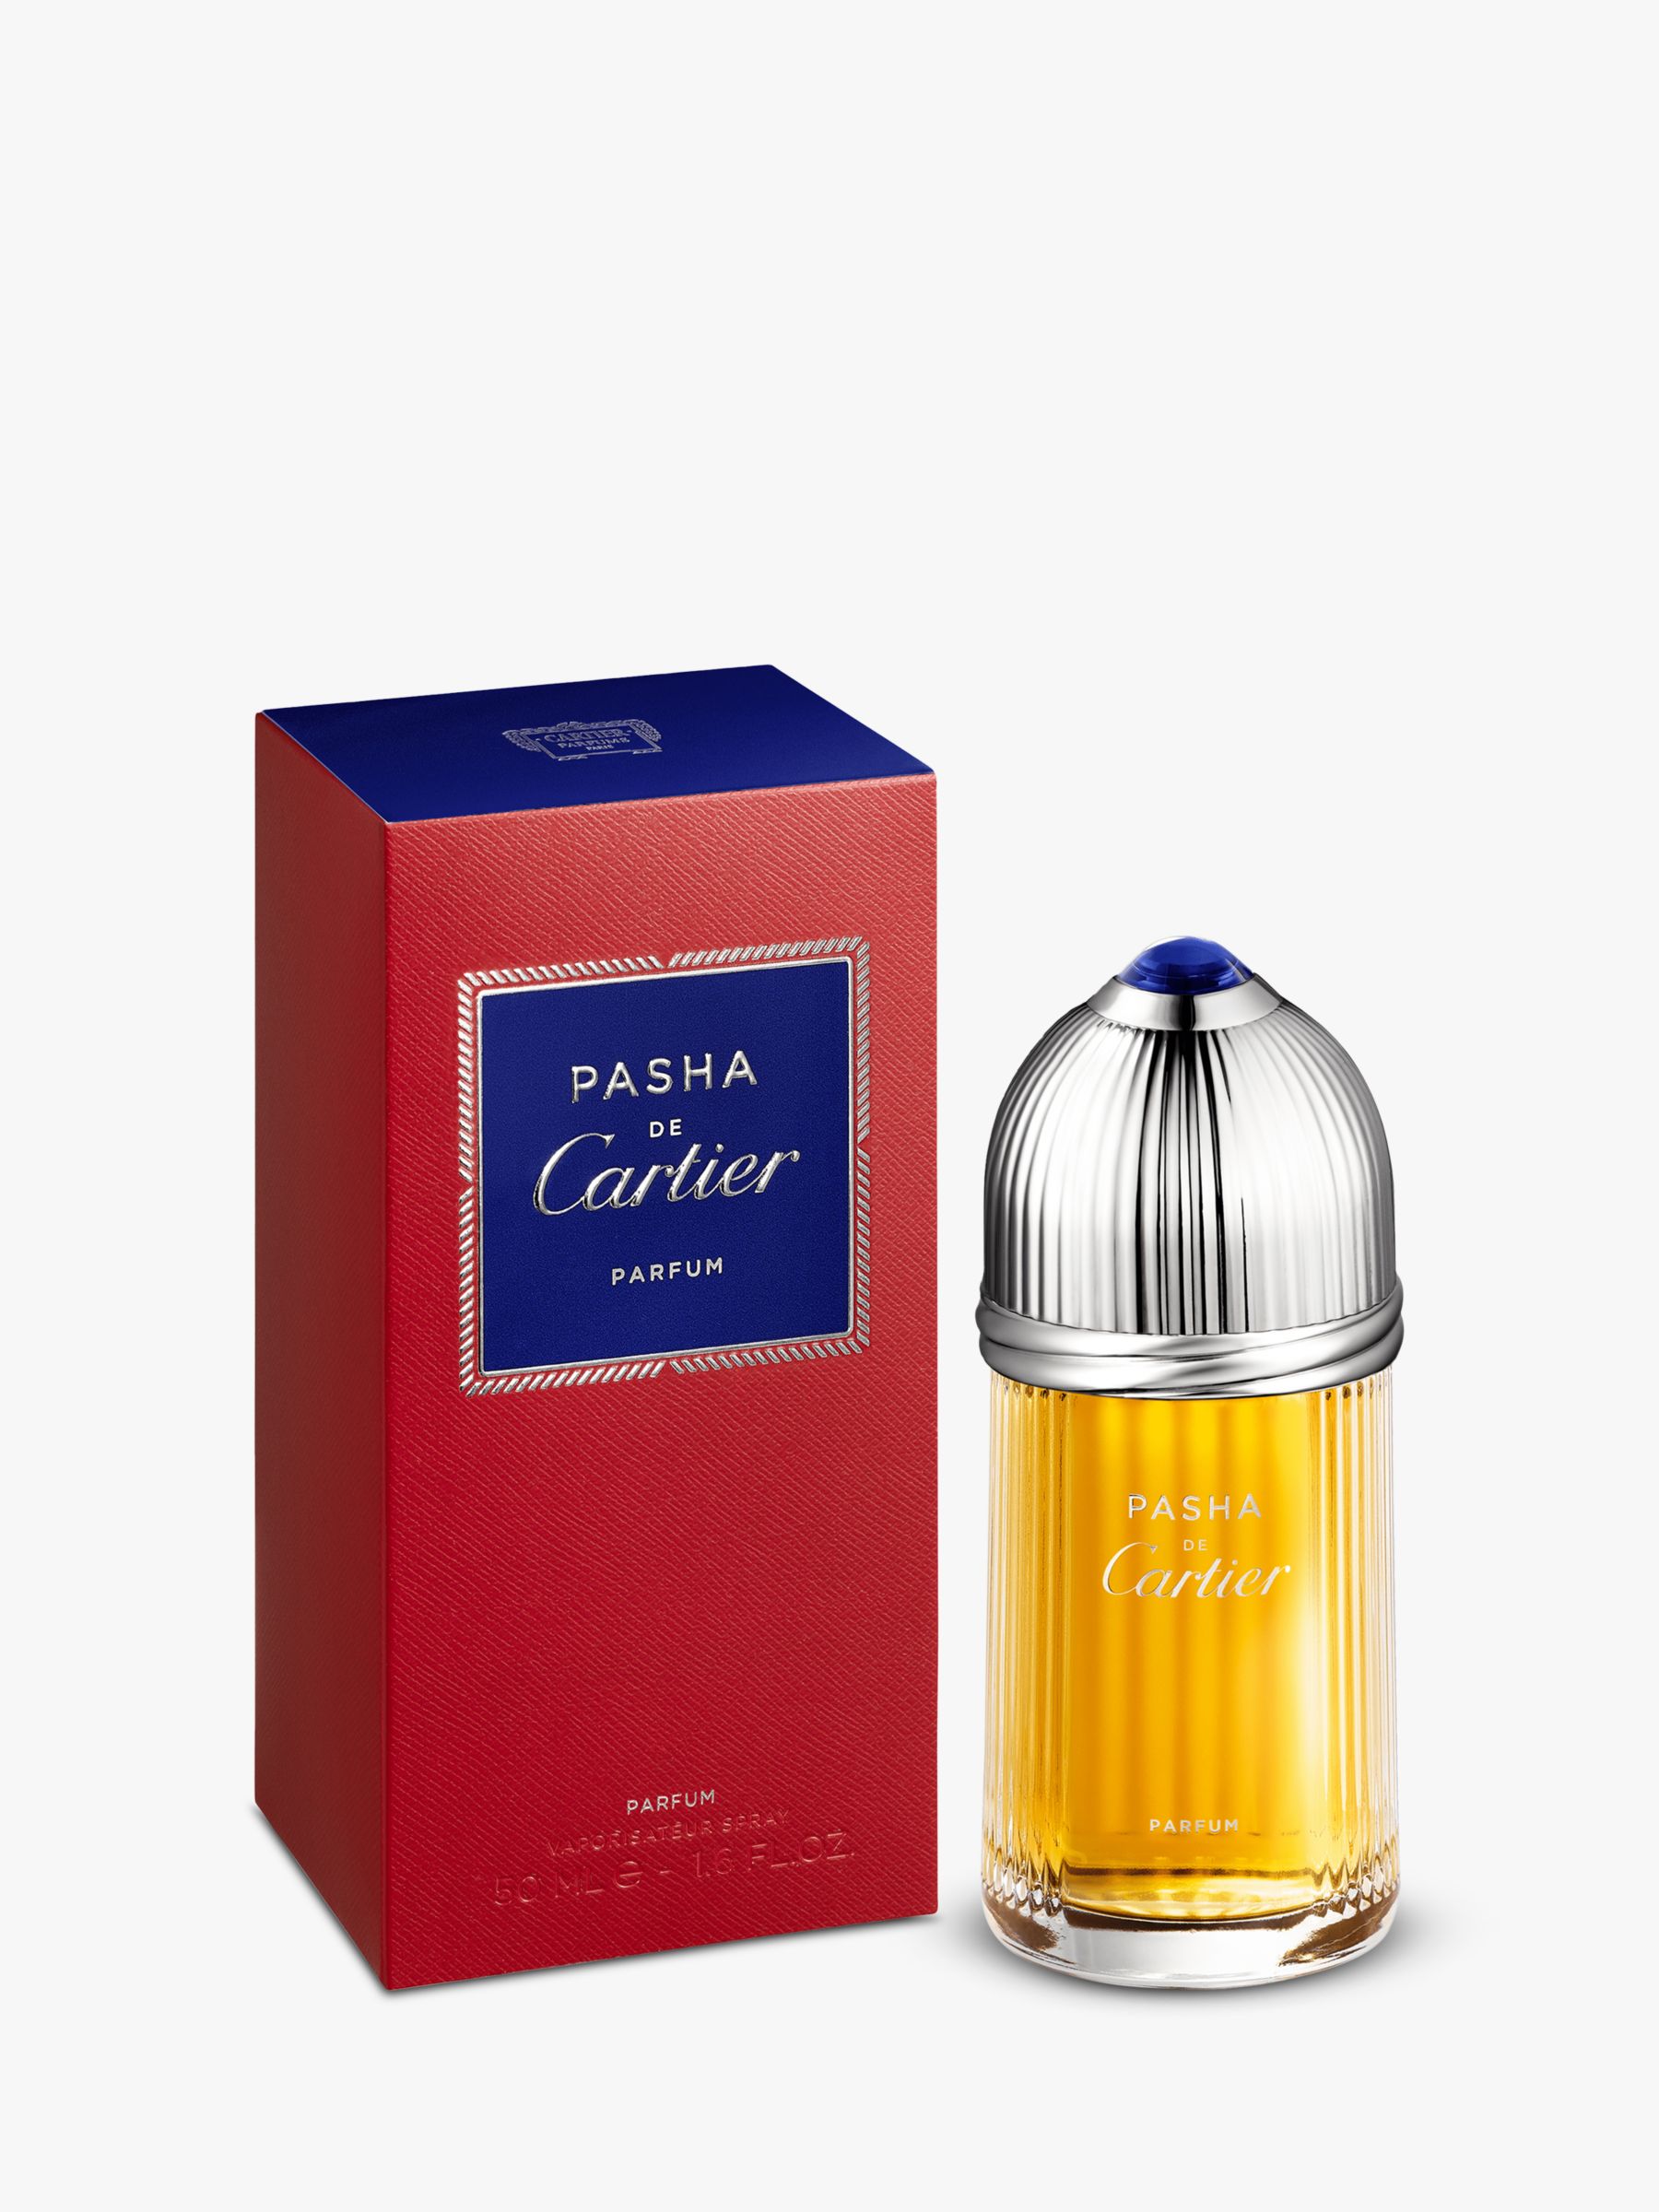 Cartier Pasha de Cartier Parfum at John 